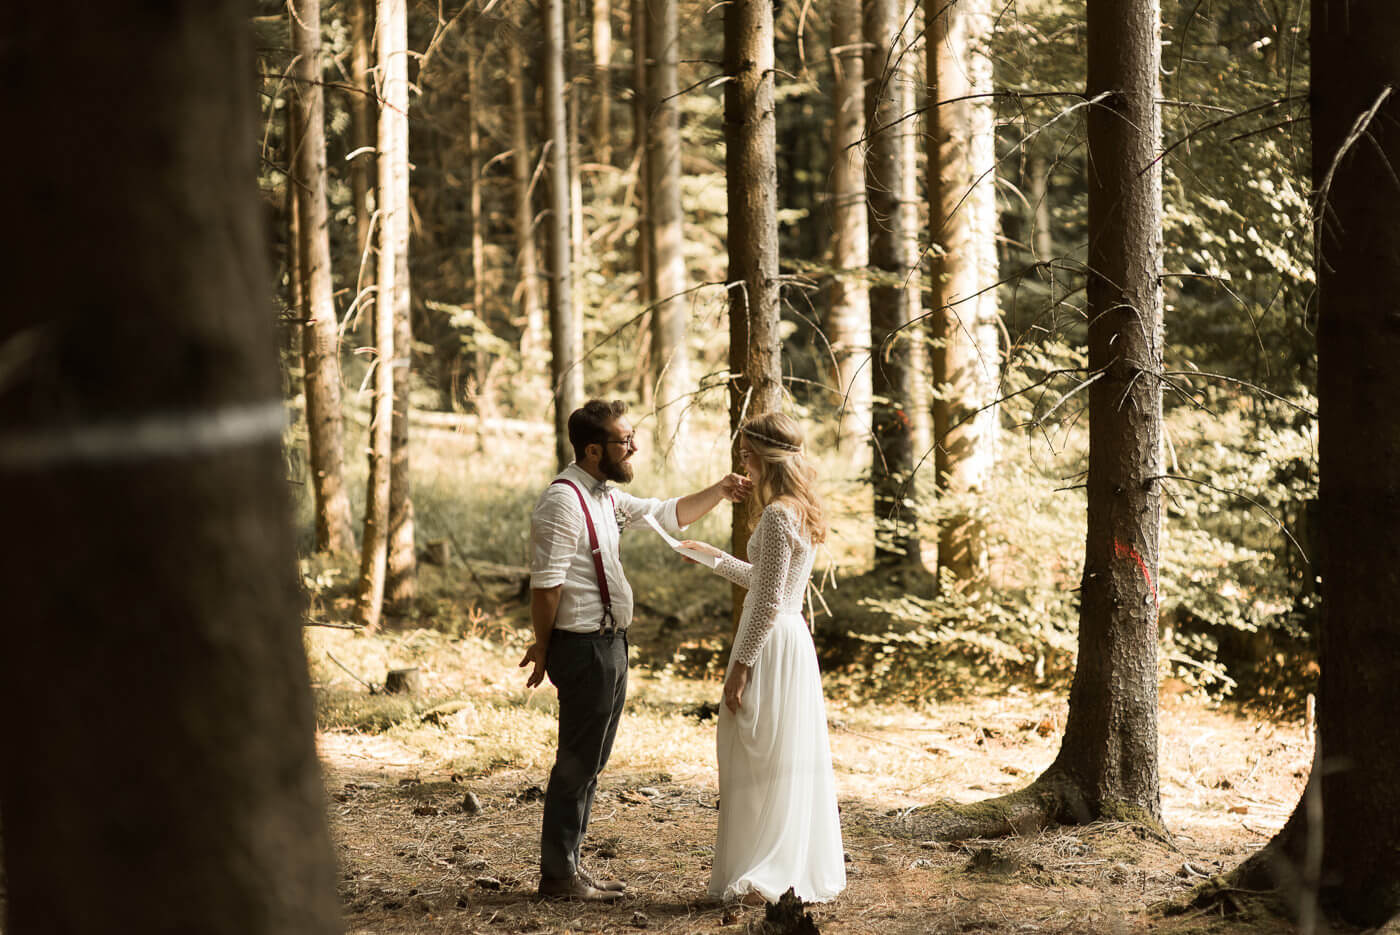 Trauversprechen zwischen Braut und Brautpaar in Wald ohne Pfarrer oder Trauzeugen